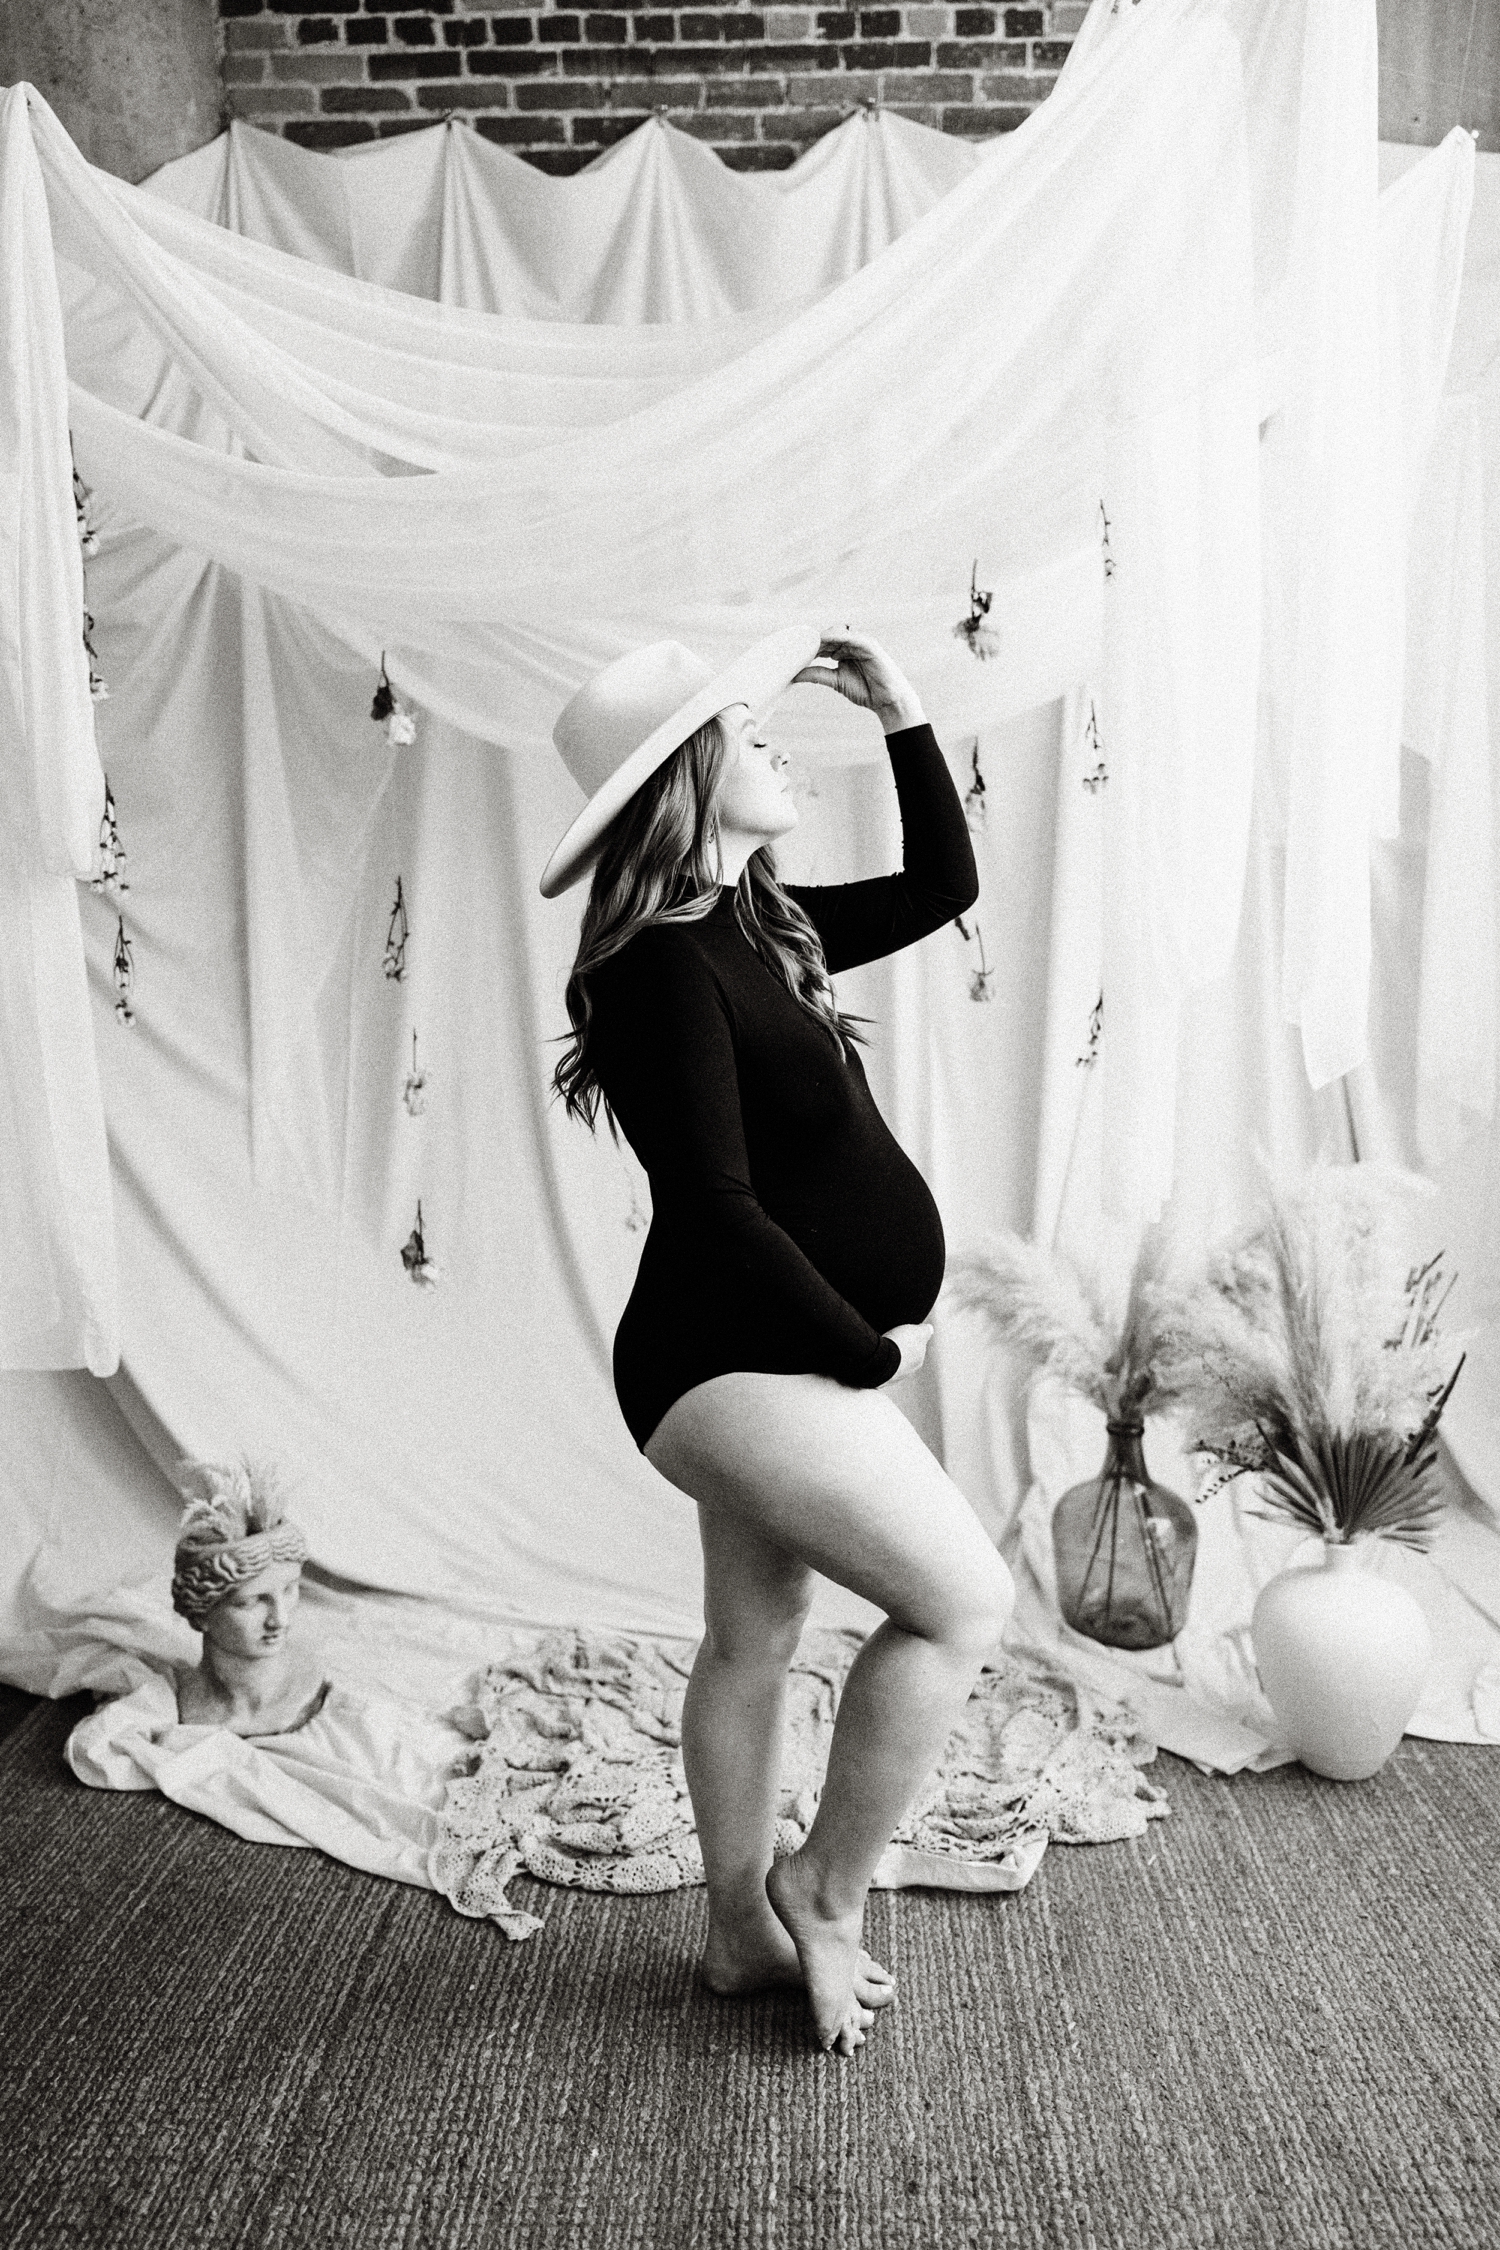 Bare Belly Maternity Session in Dallas, Texas Studio Dear Meraki | Brittnie Renee Photo | Dallas Maternity and Family Photographer